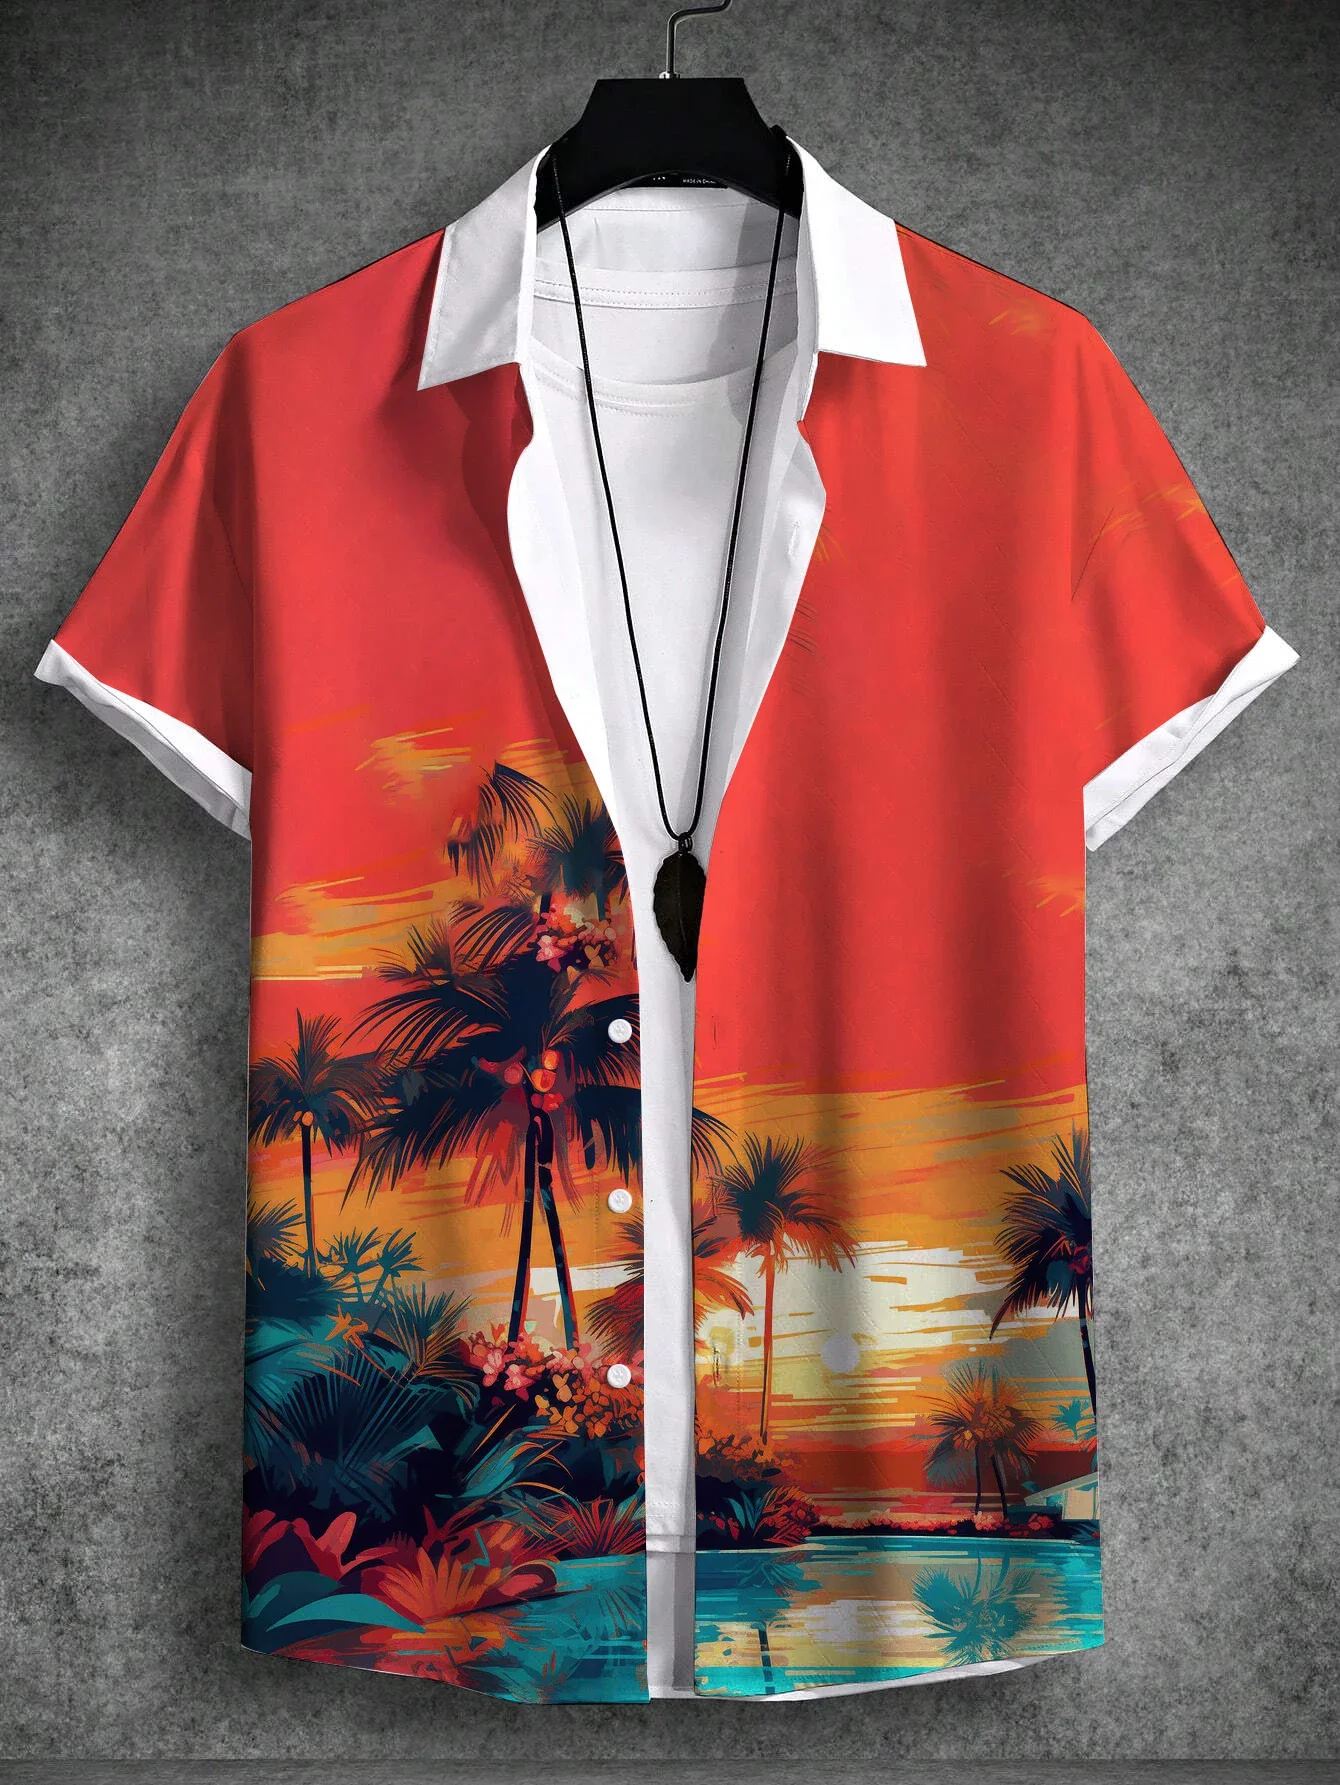 

Men's Shirts Hawaiian Vacation Style 3D Print Coconut tree Graphic Short Sleeve Tee Tops Streetwear Loose Casual Hawaiian Shirts